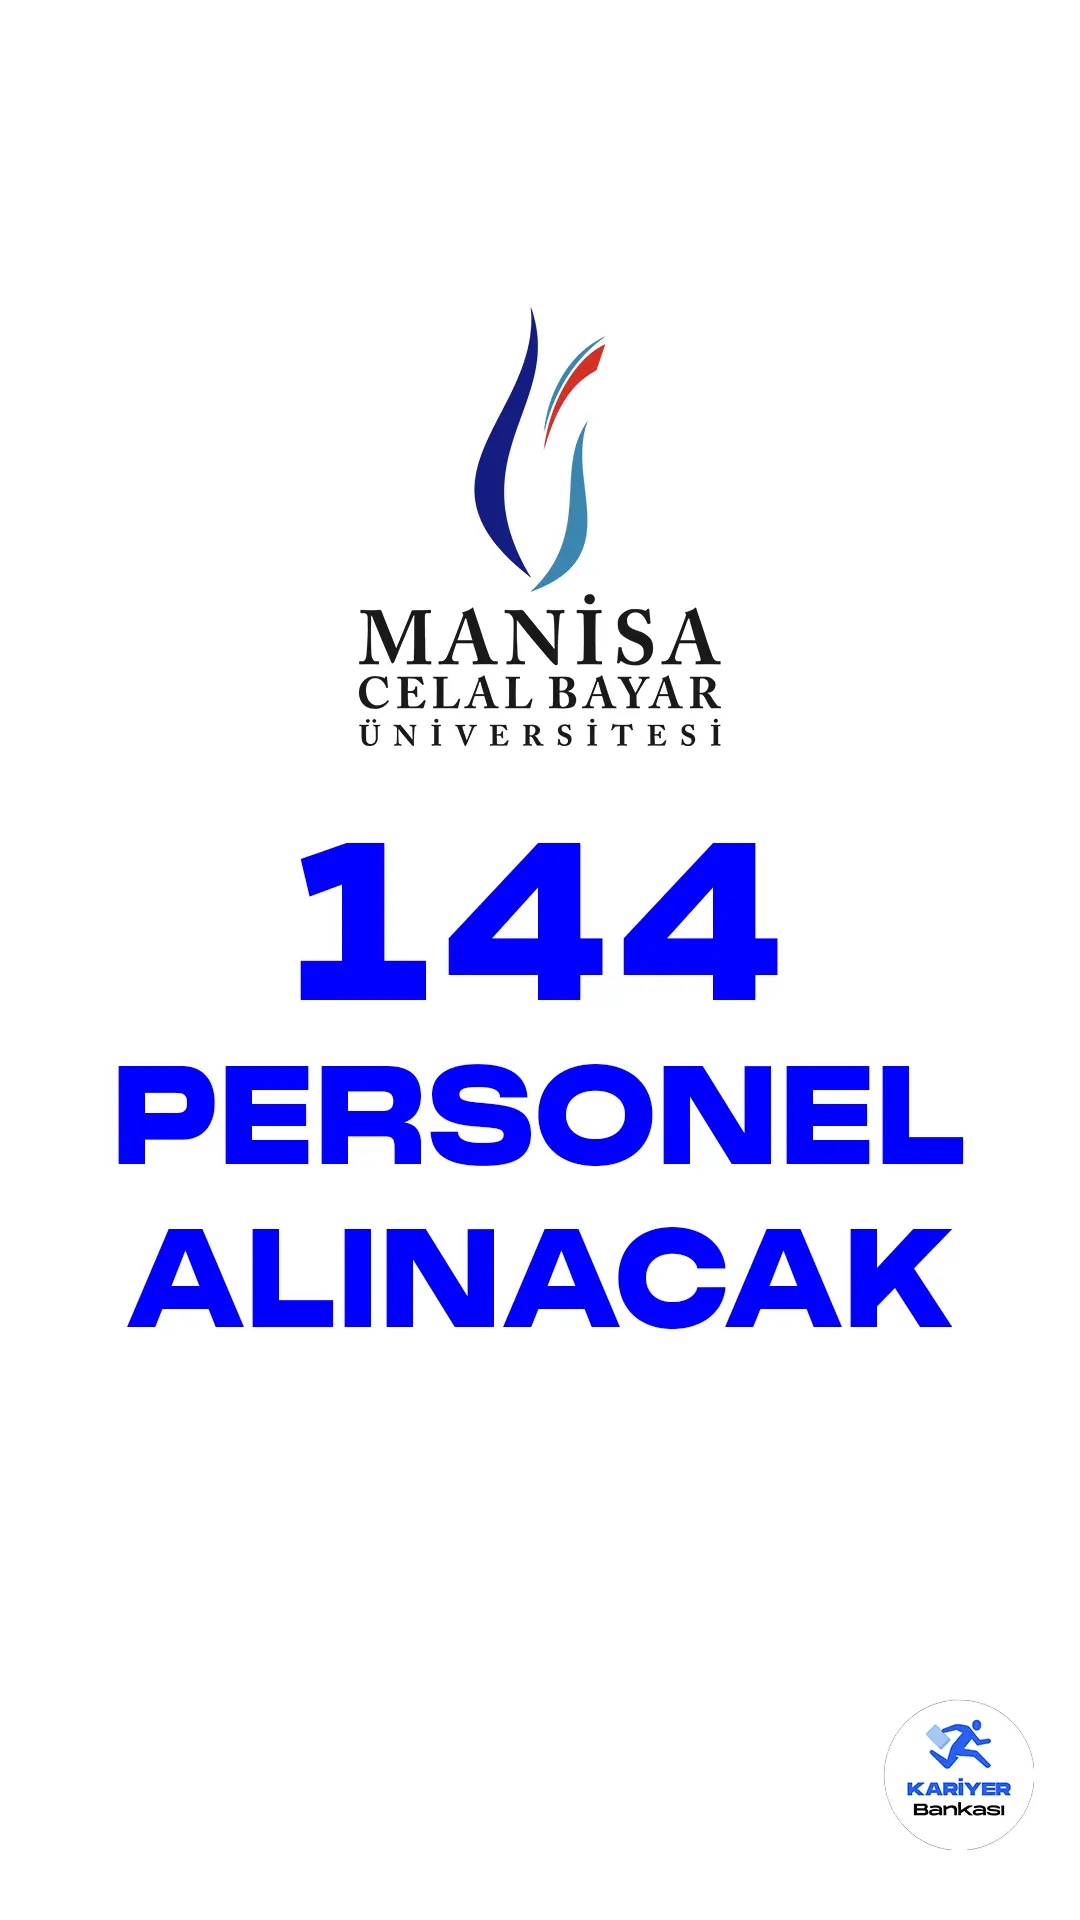 Manisa Celal Bayar Üniversitesi personel alımı duyurusu yayımlandı. Cumhurbaşkanlığı SBB Kamu ilen sitesinde yayımlanan duyuruda, Celal Bayar Üniversitesine 144 sözleşmeli personel alımı yapılacağı aktarıldı.